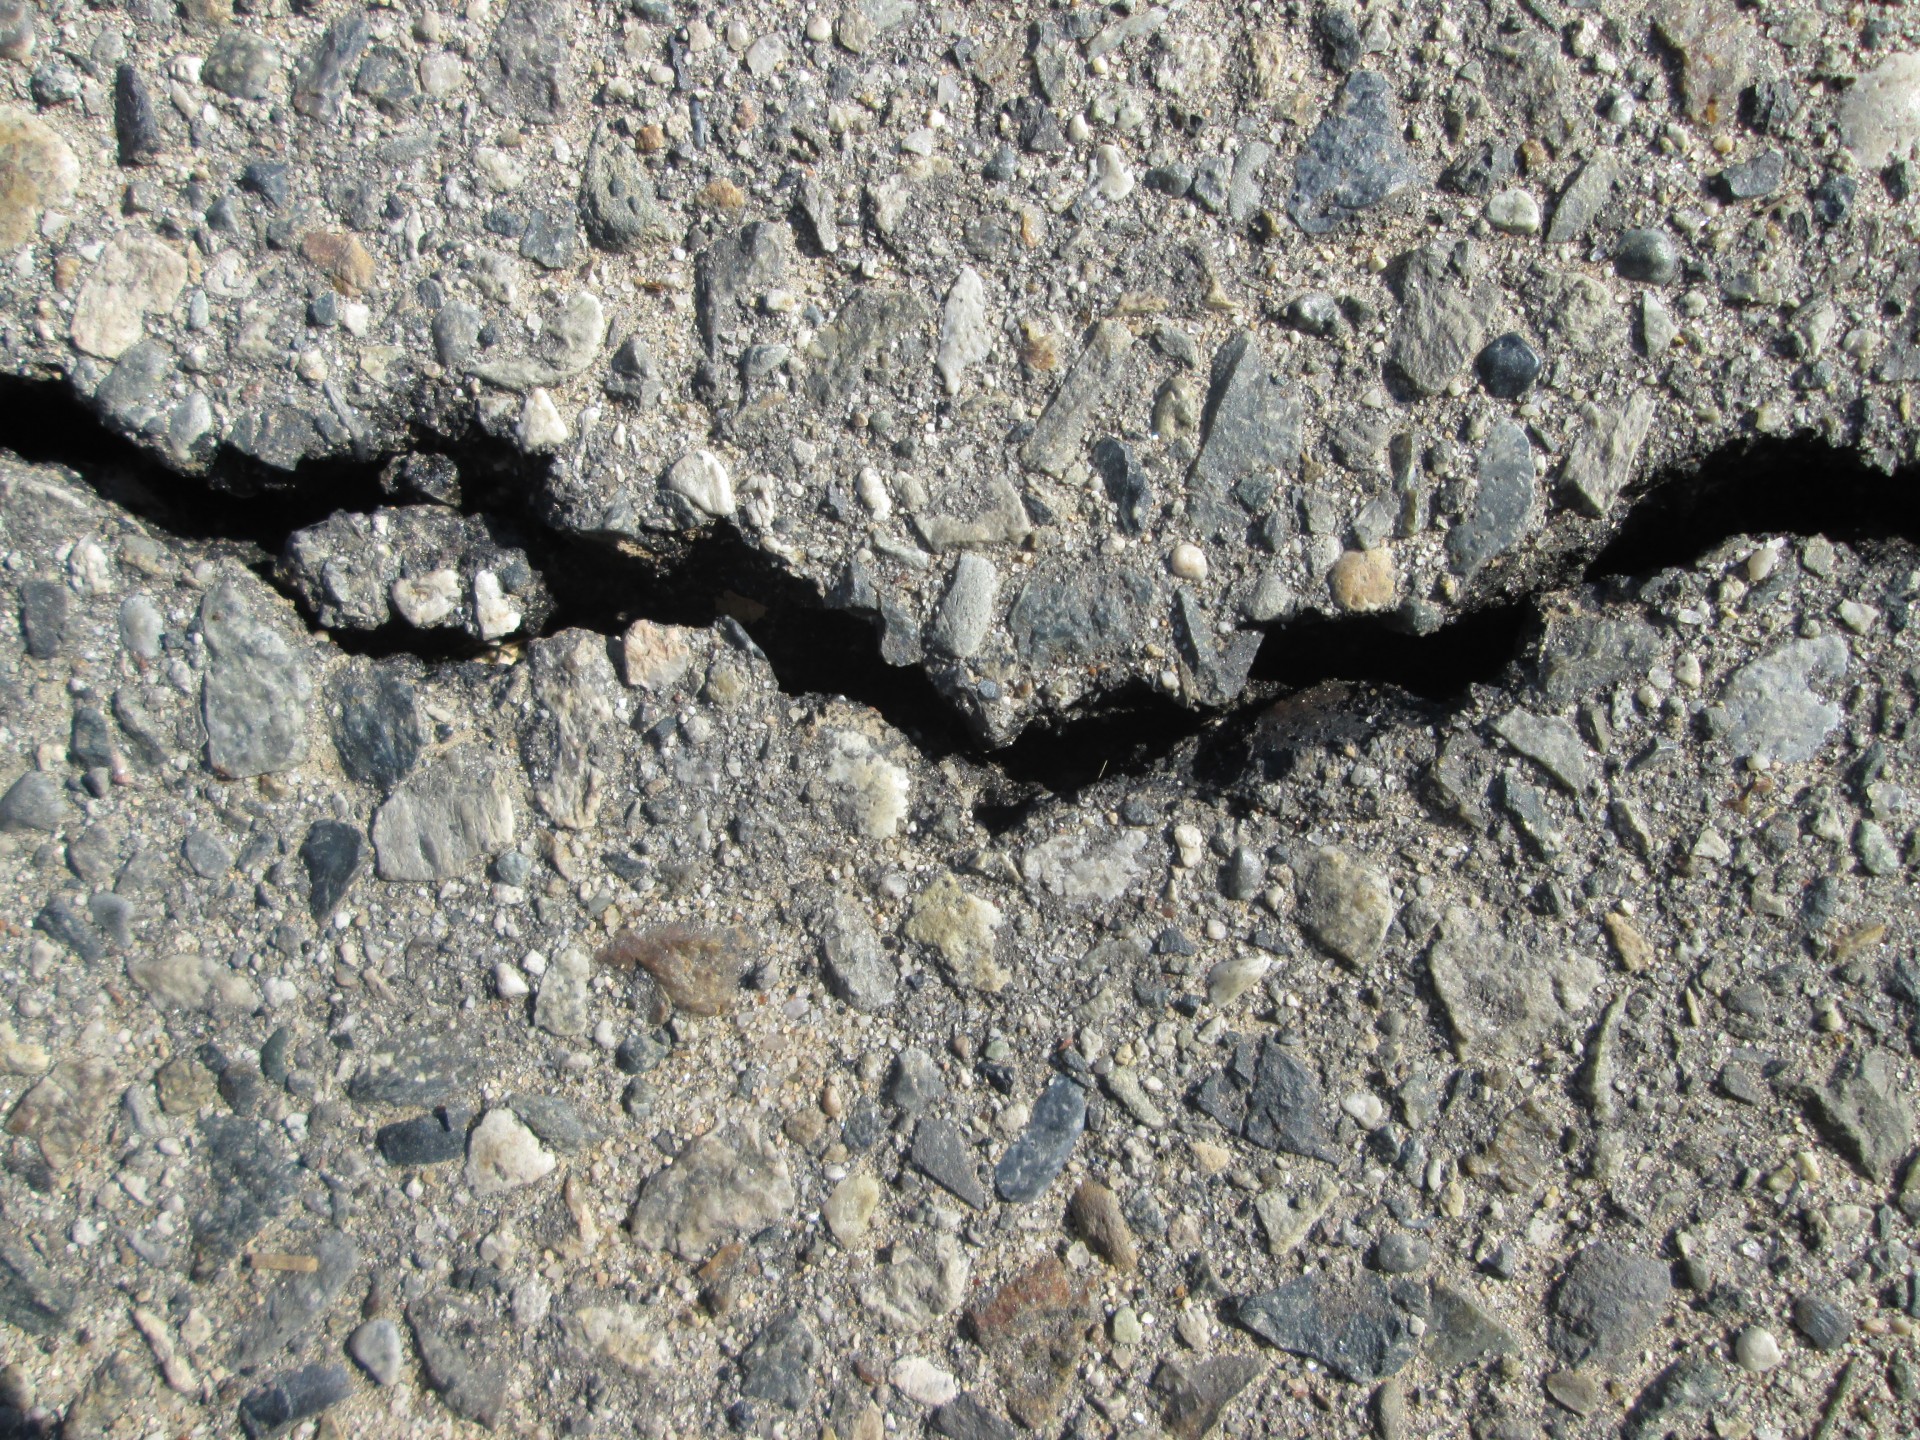 asphalt-crack-2-free-stock-photo-public-domain-pictures